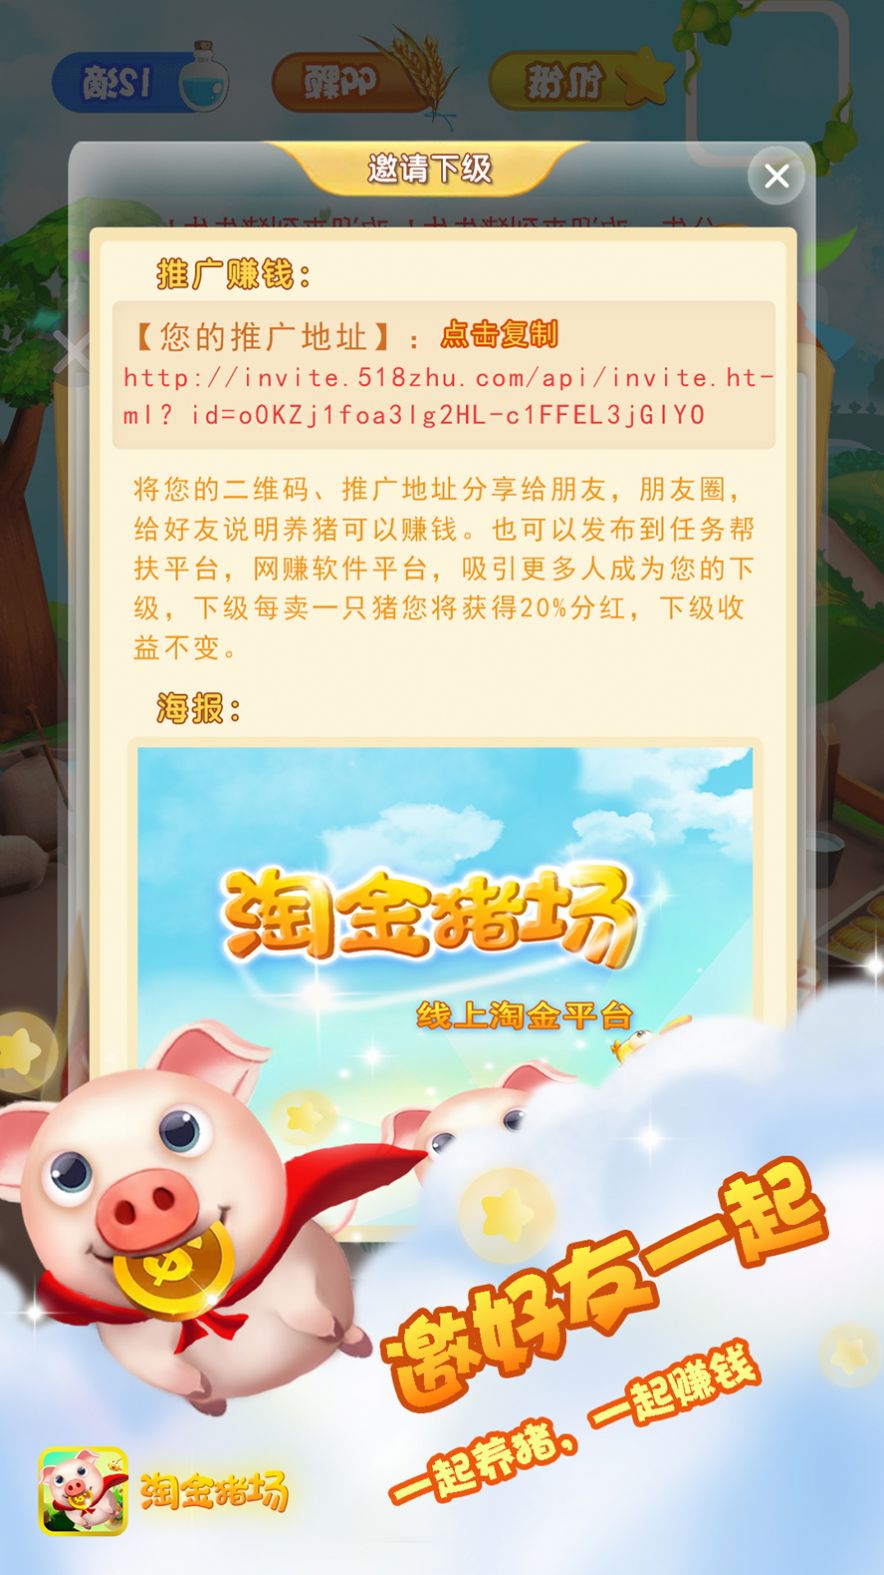 淘金猪场游戏红包版下载 v1.1.4 第1张